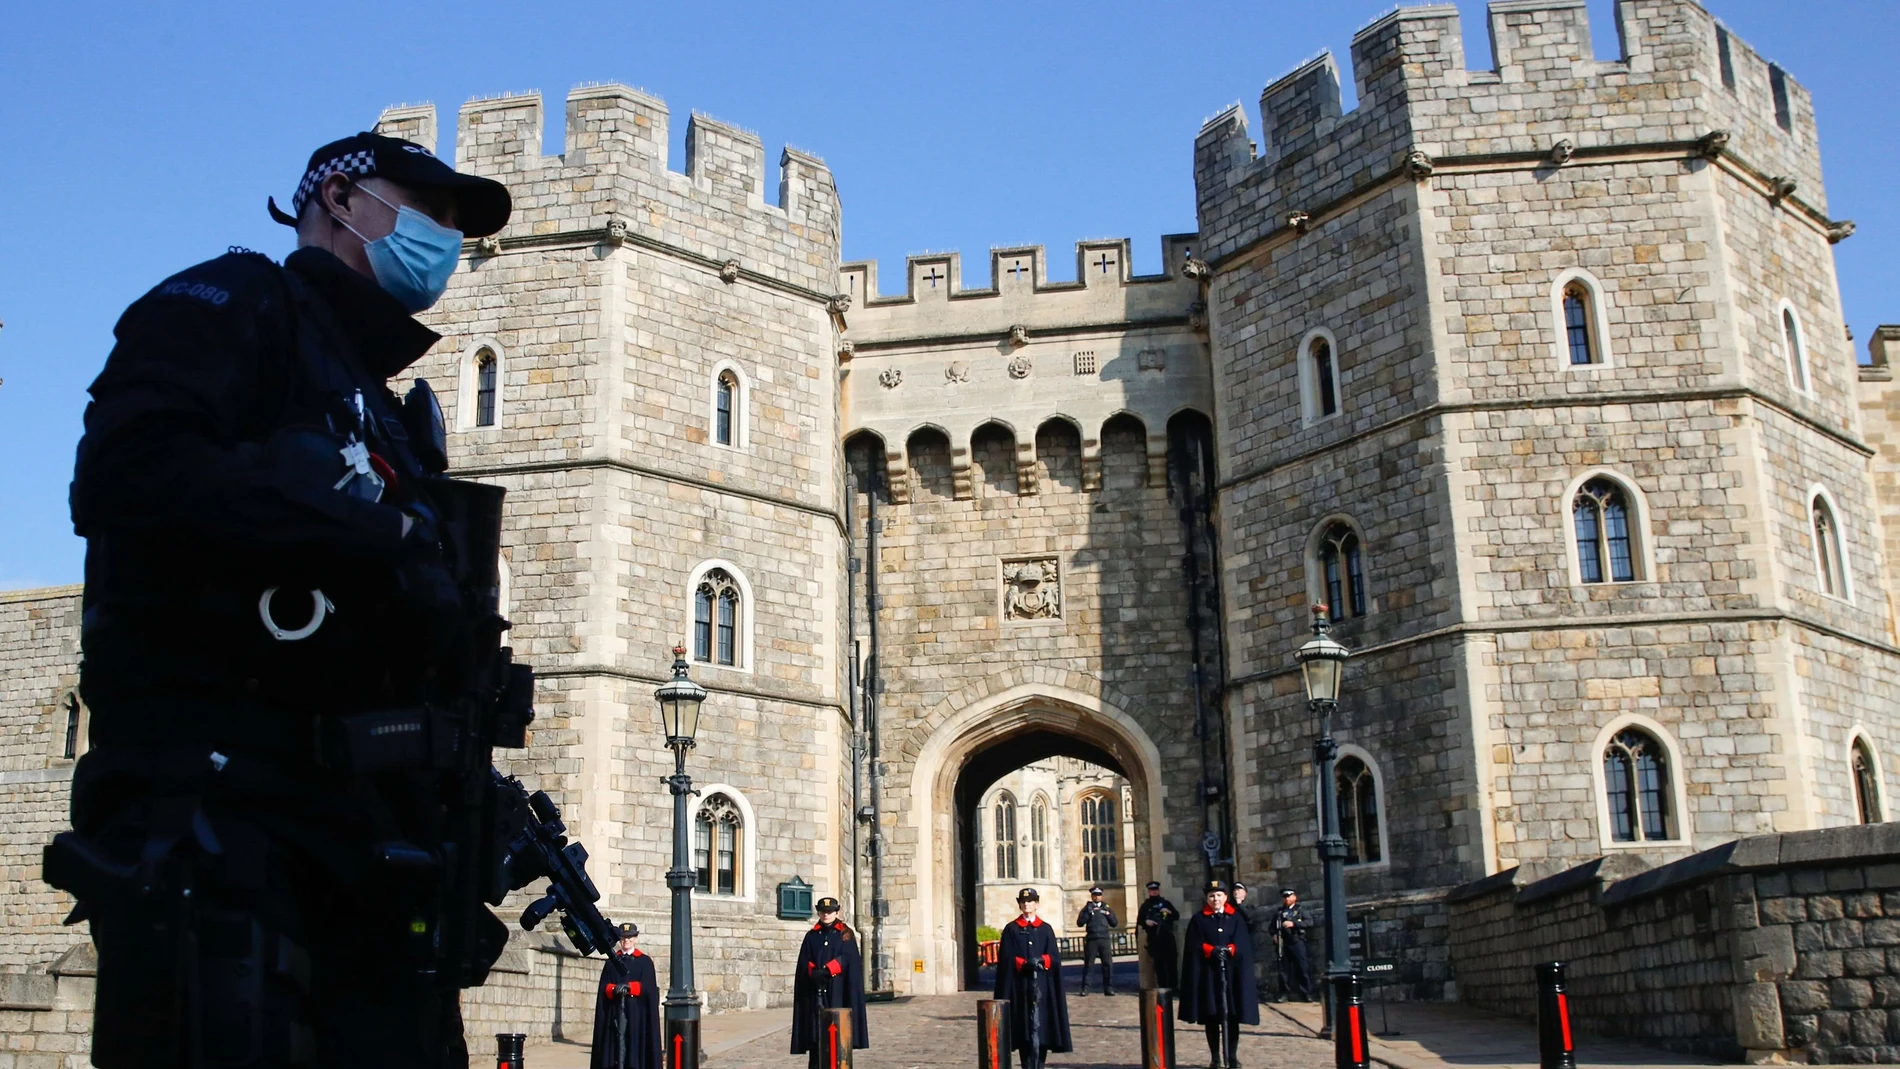 Windsor ha establecido importantes medidas de seguridad adicionales antes del funeral del príncipe Felipe este sábado